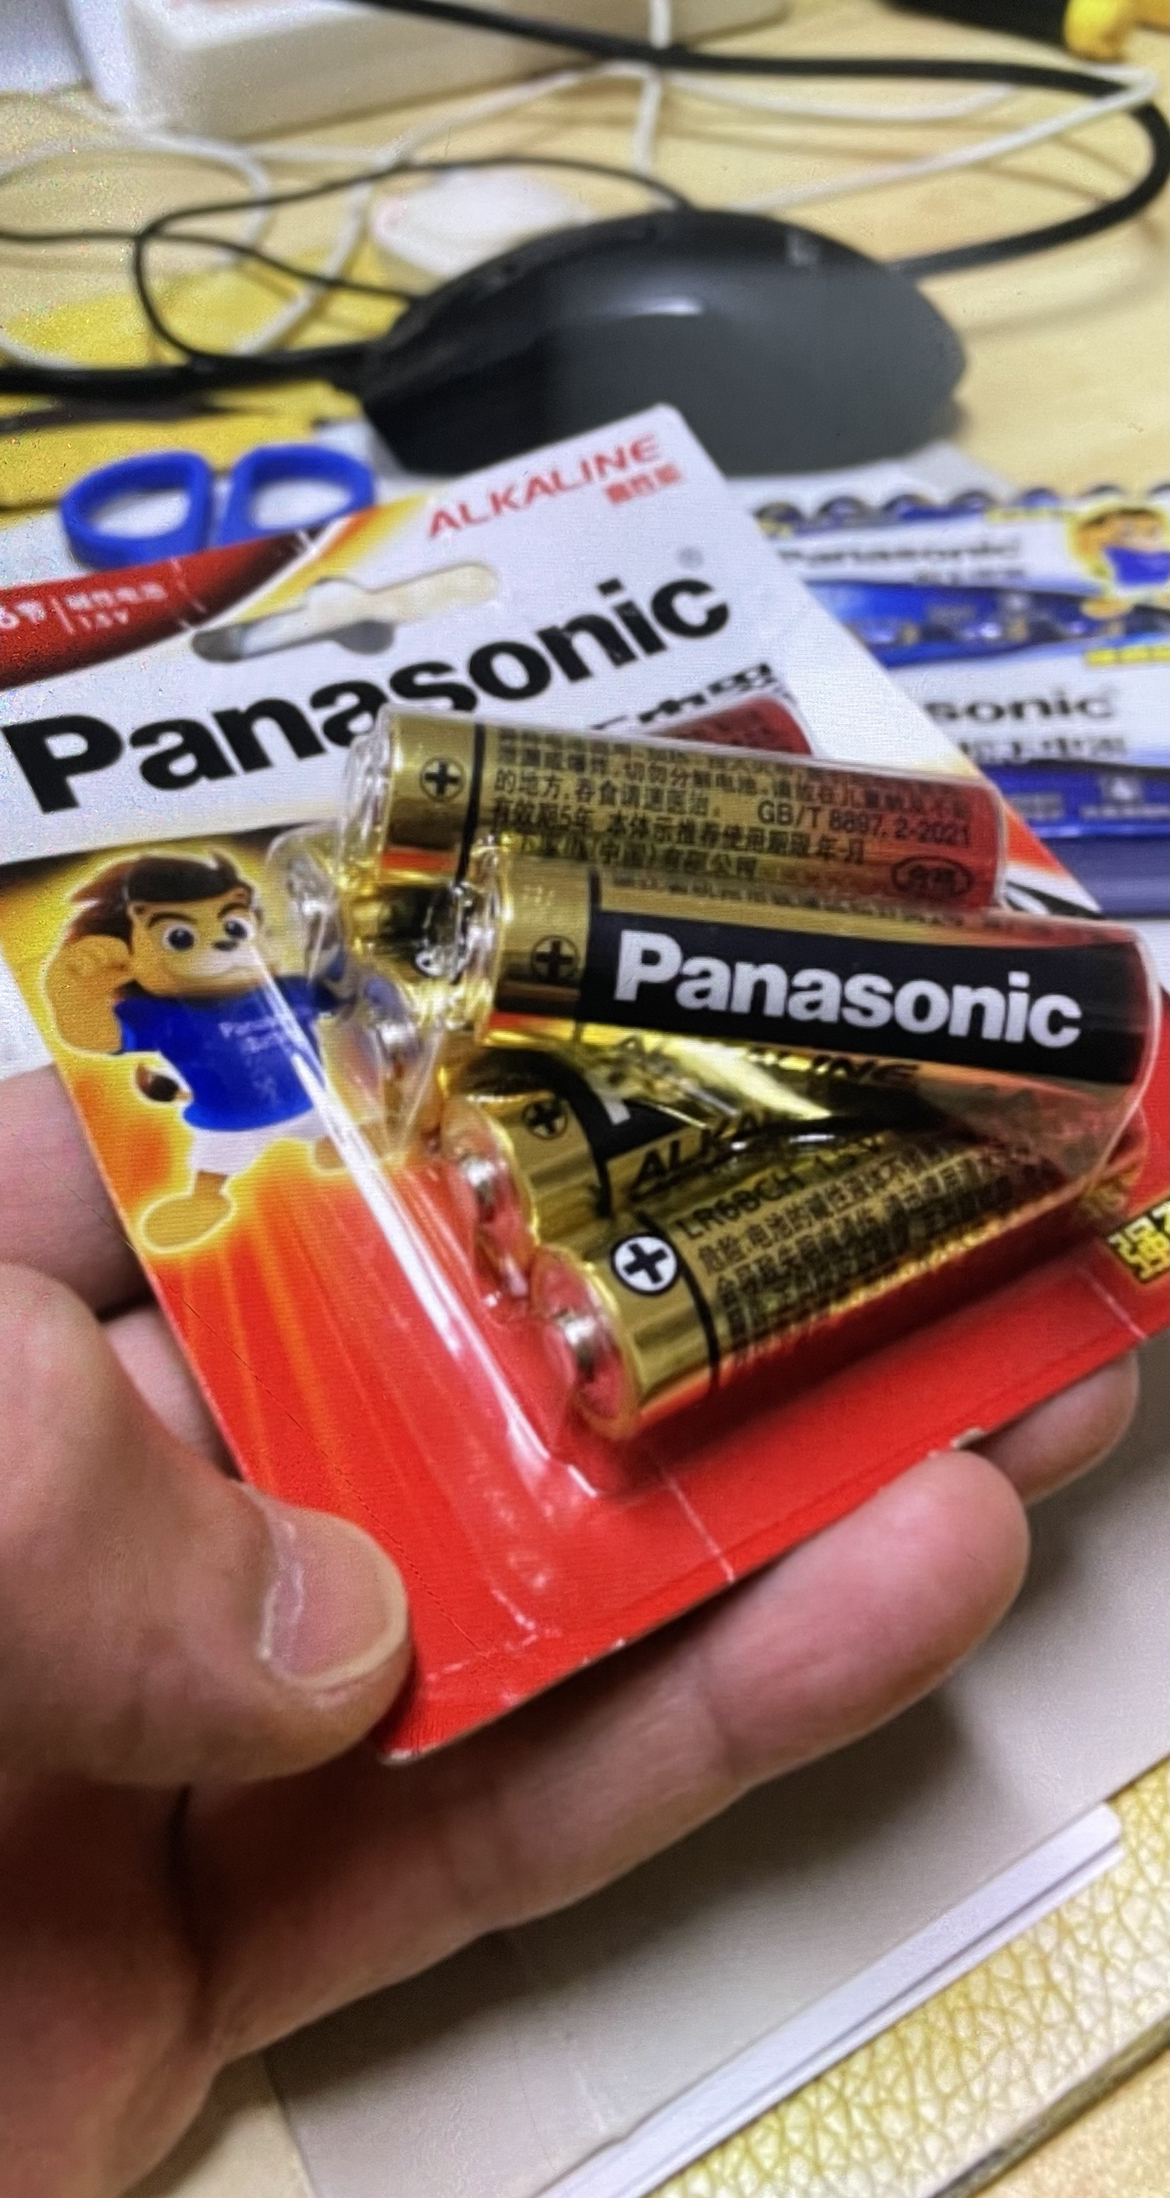 松下Panasonic 正品通用5号6粒五号耐用碱性干电池 儿童玩具/遥控器/挂钟/键盘电池晒单图